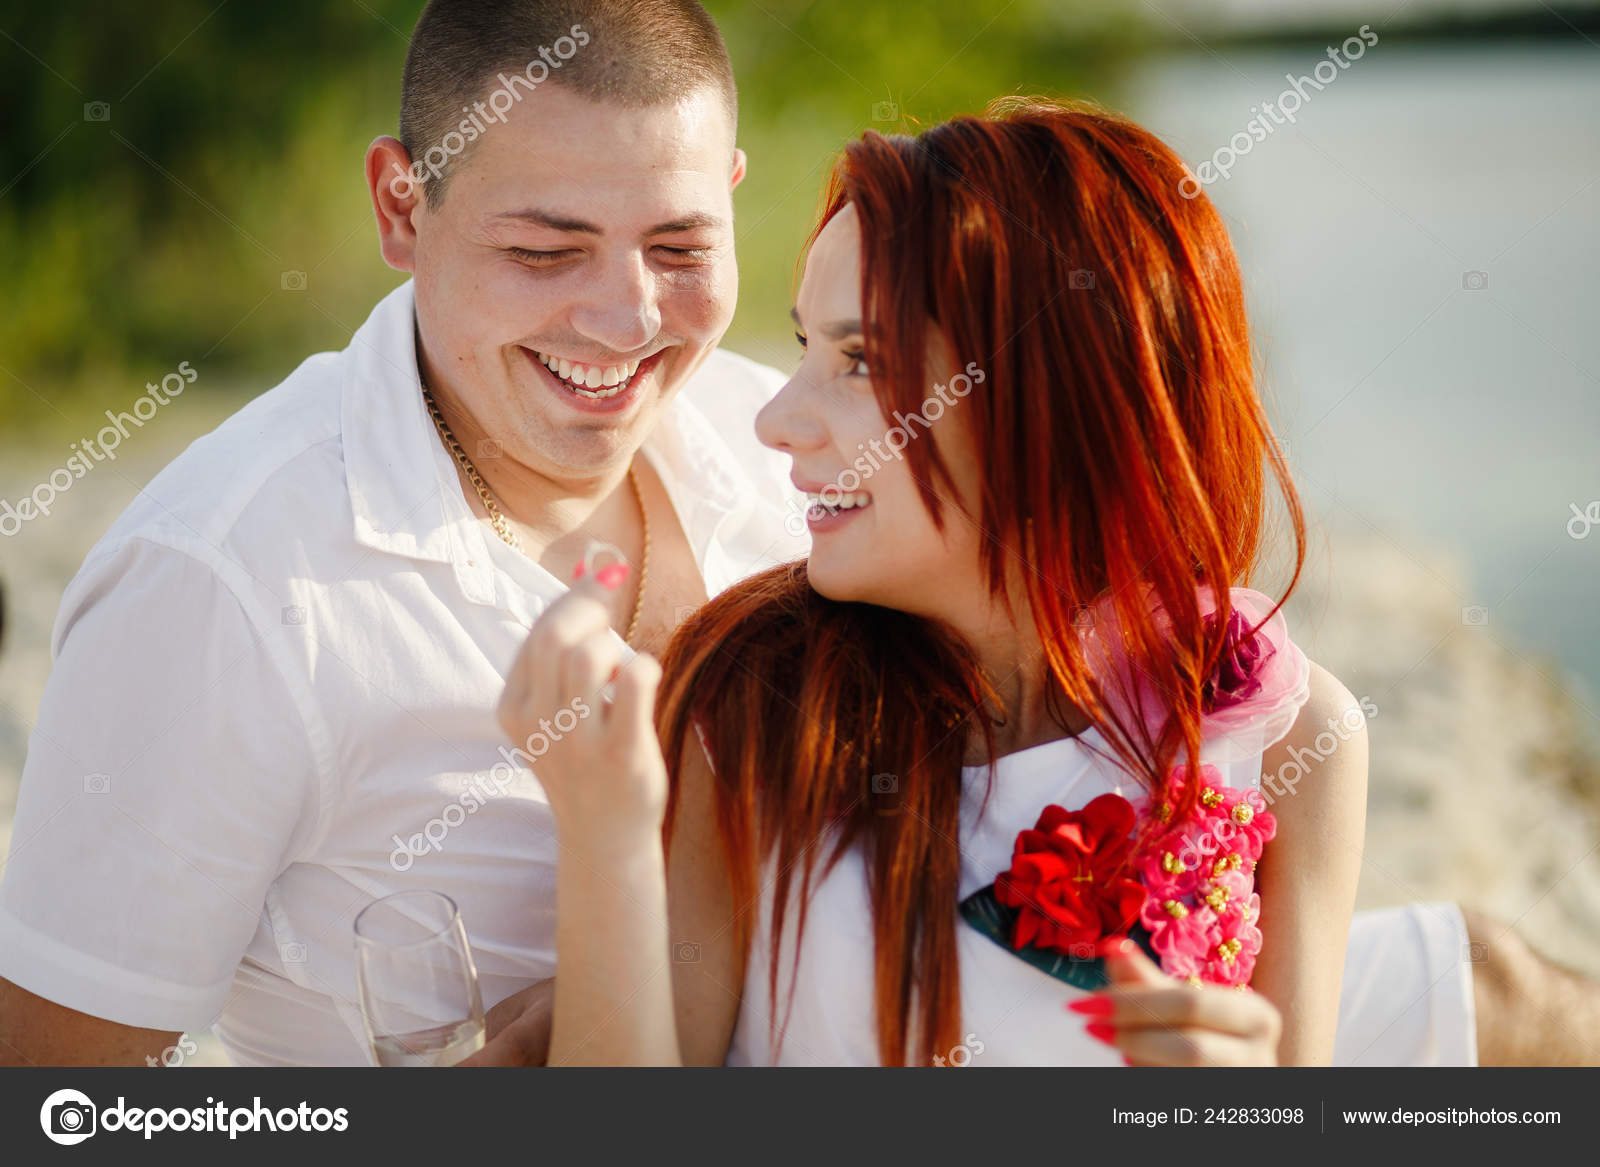 Romantic Couple Stock Photo Valentines Day